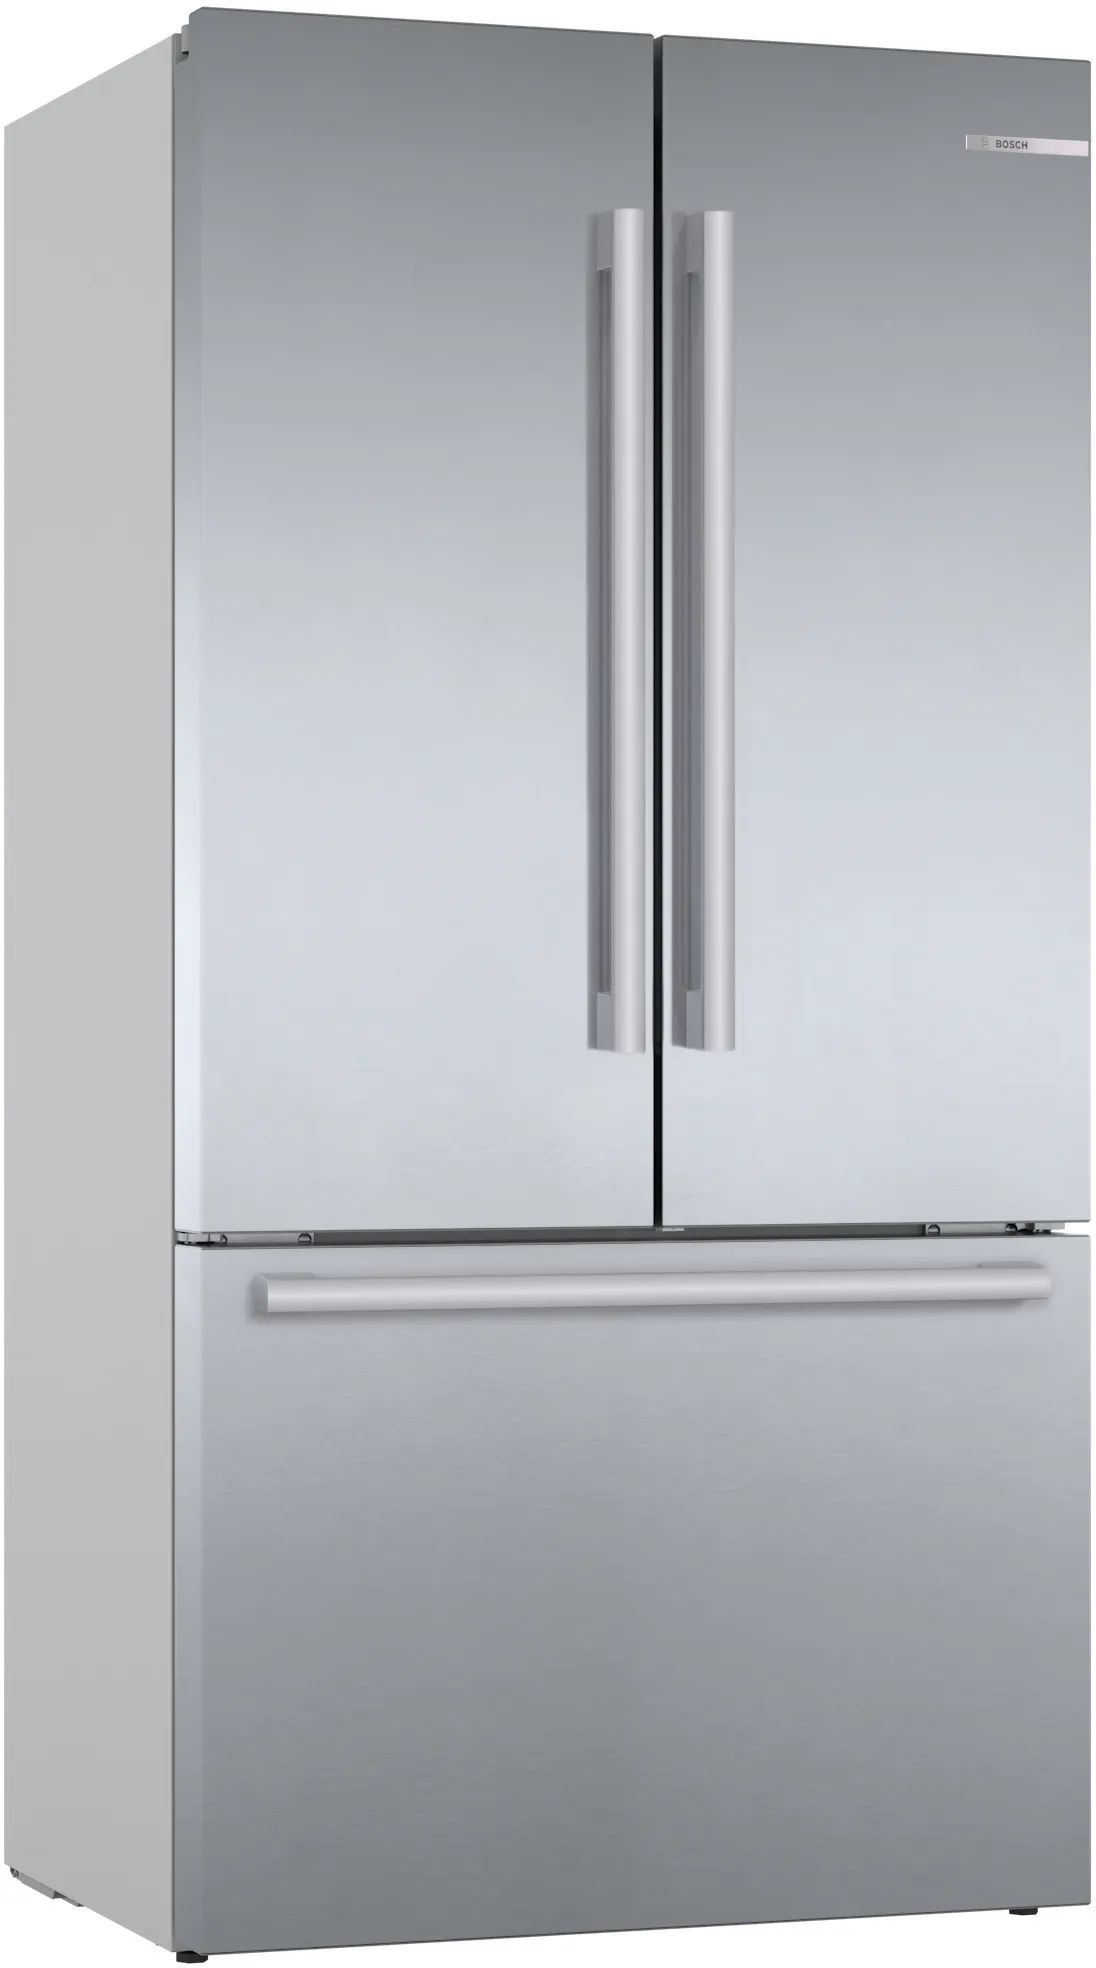 Series 8 French Door Bottom freezer, multi door 183 x 90.5 cm Brushed steel anti-fingerprint 